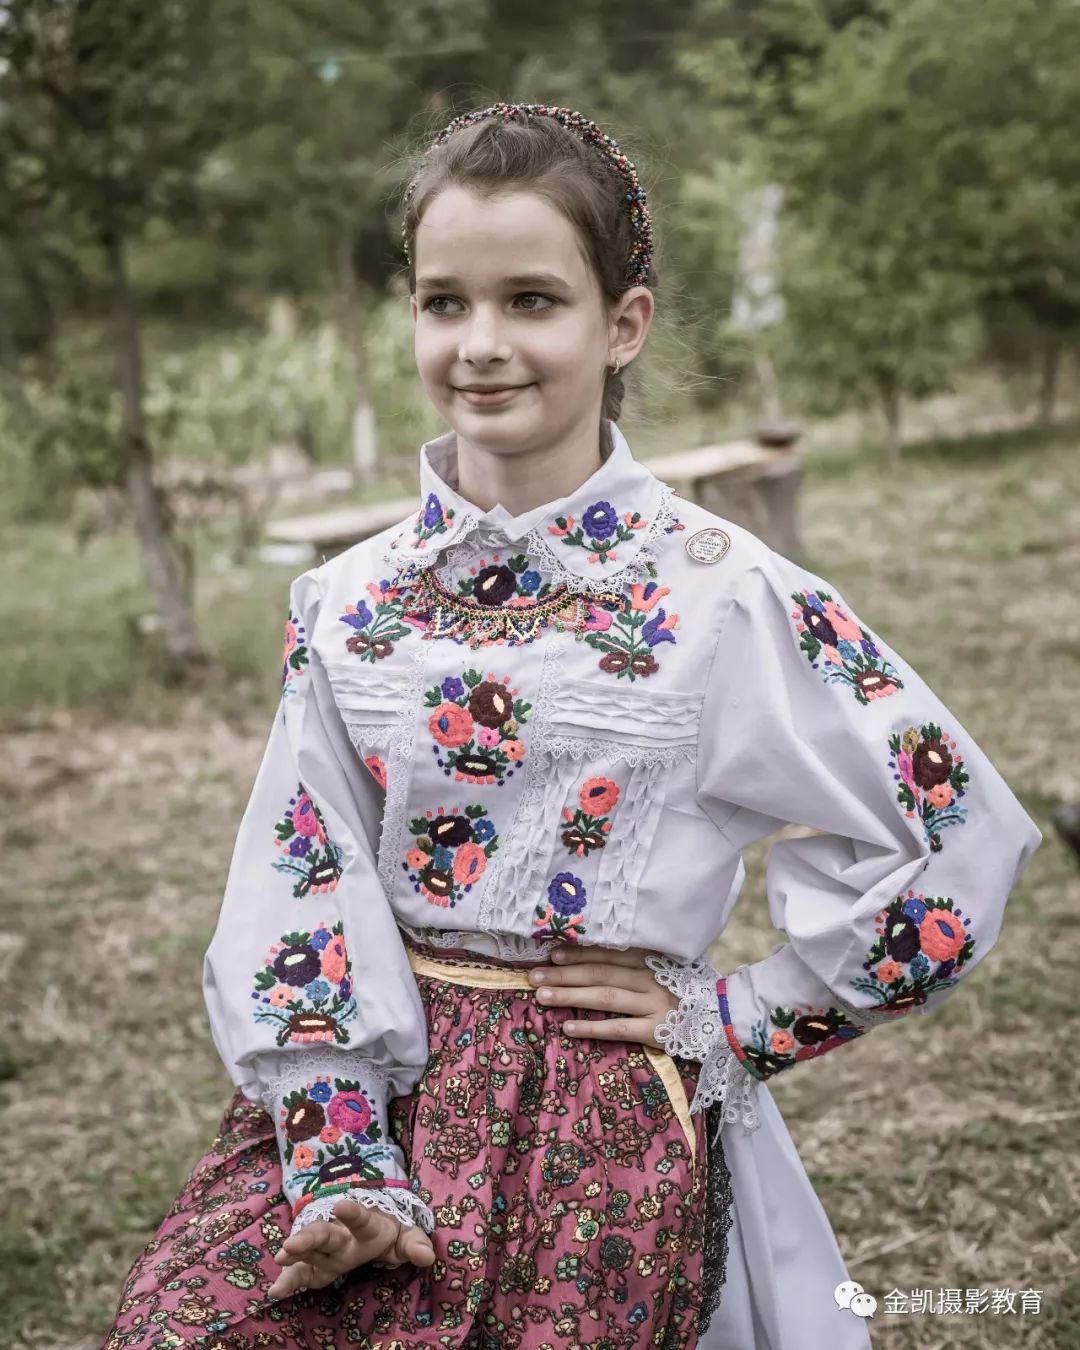 女孩子编织的传统的东欧发式虽然是乡间,但罗马尼亚几乎家家有马车与